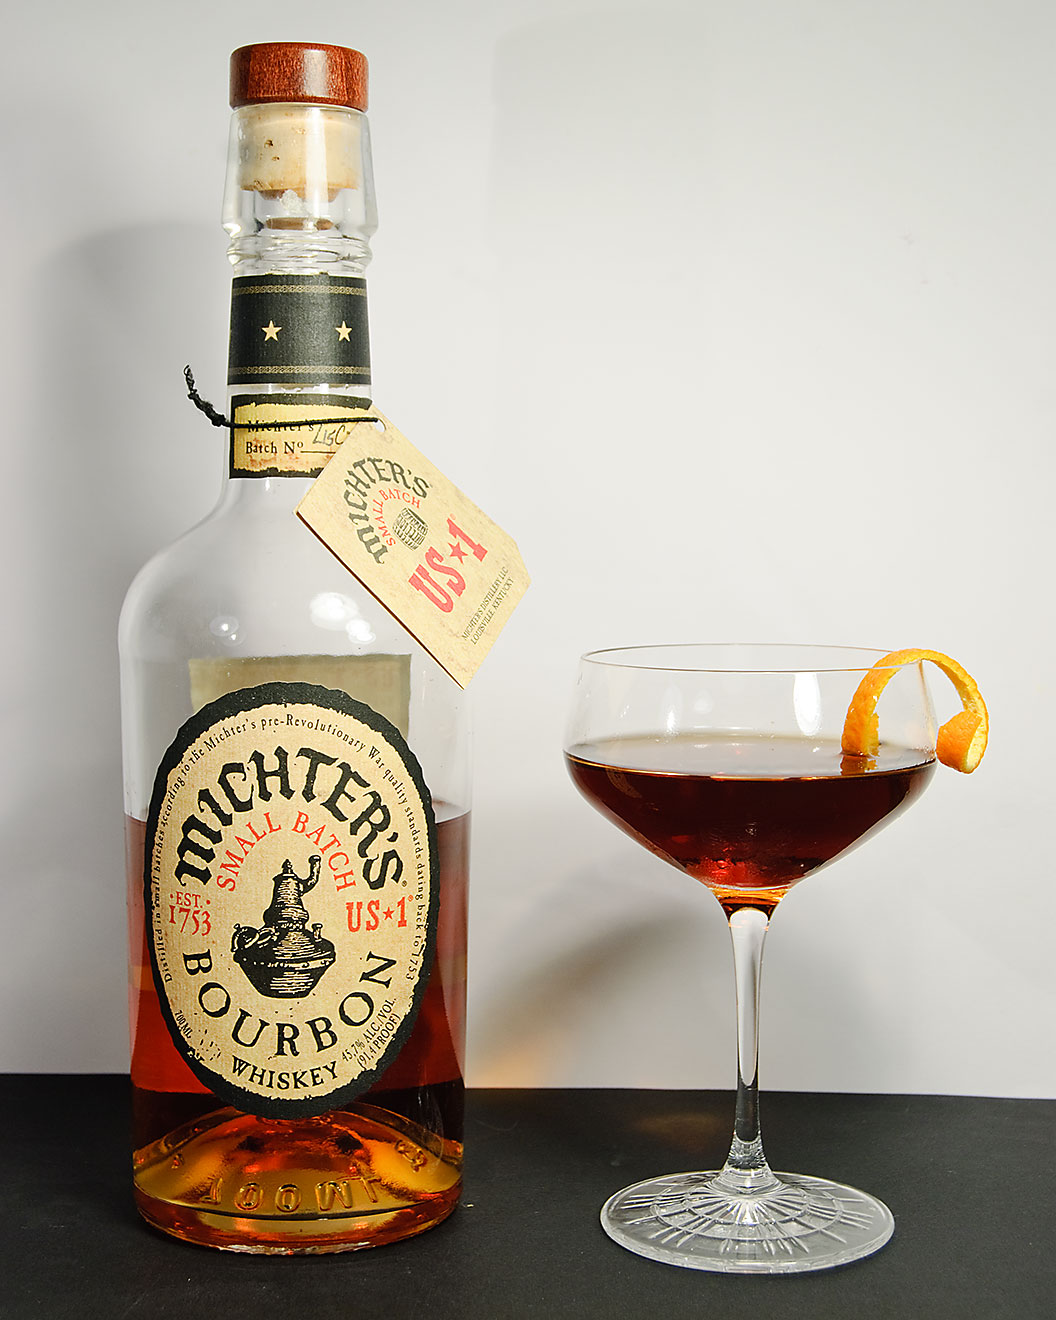 Michter's US *1 Small Batch Bourbon Whisky dans un cocktail revolver avec liqueur de café et amers à l'orange. 